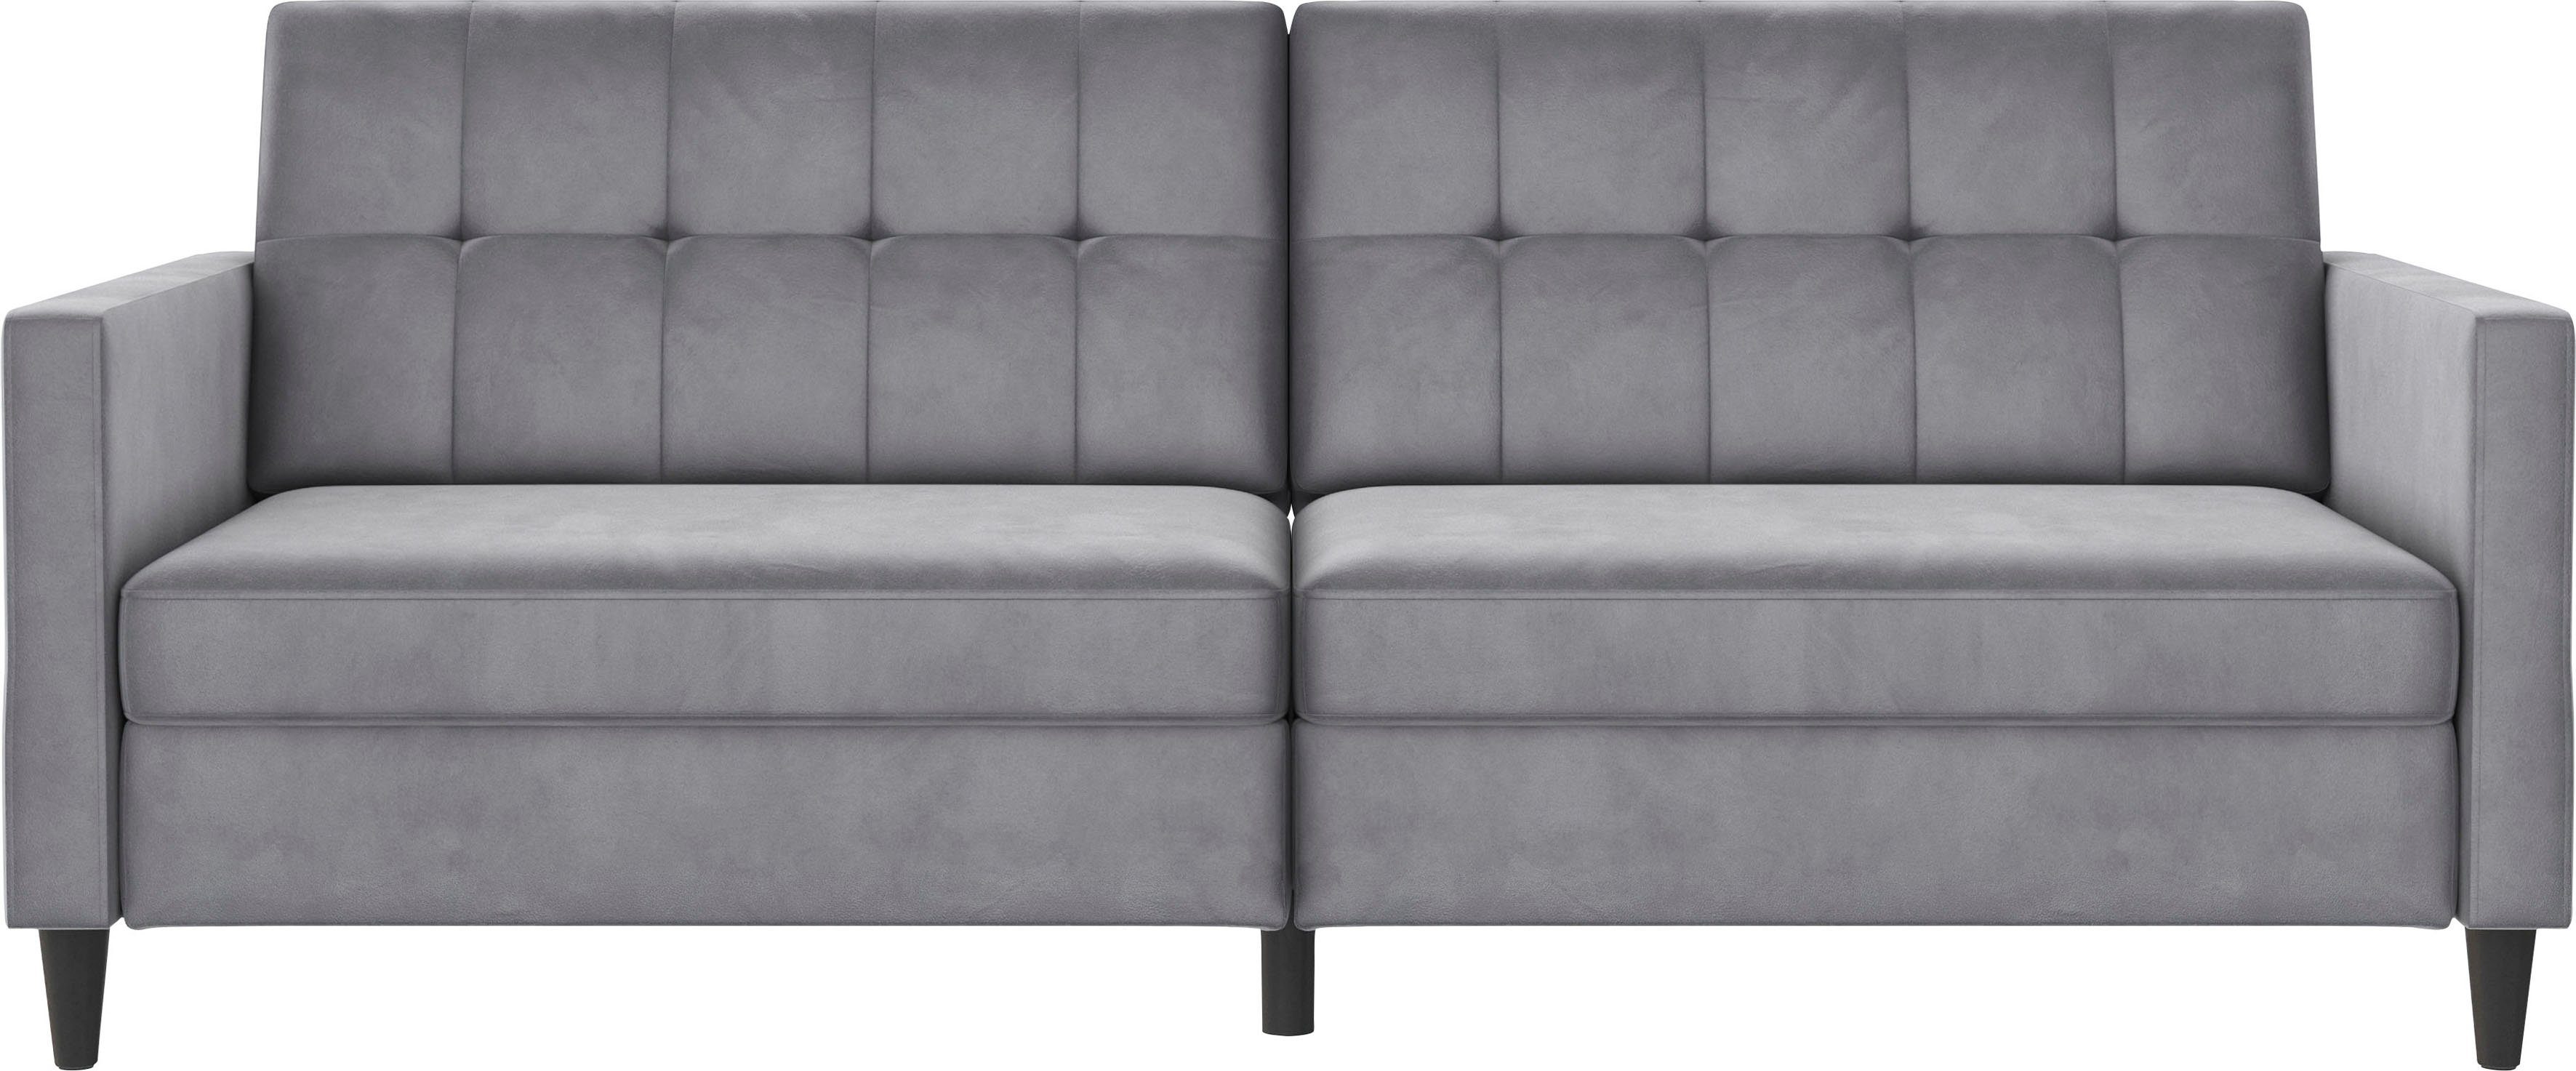 Dorel Home 3-Sitzer »Hartford«, Sofa mit Bettfunktion, Rückenlehne 2-teilig  und 3-fach verstellbar, schwarze Beine, in verschiedenen Größen,  Bezugsqualitäten und Farbvarianten erhältlich, Sitzhöhe 43 cm online kaufen  | OTTO